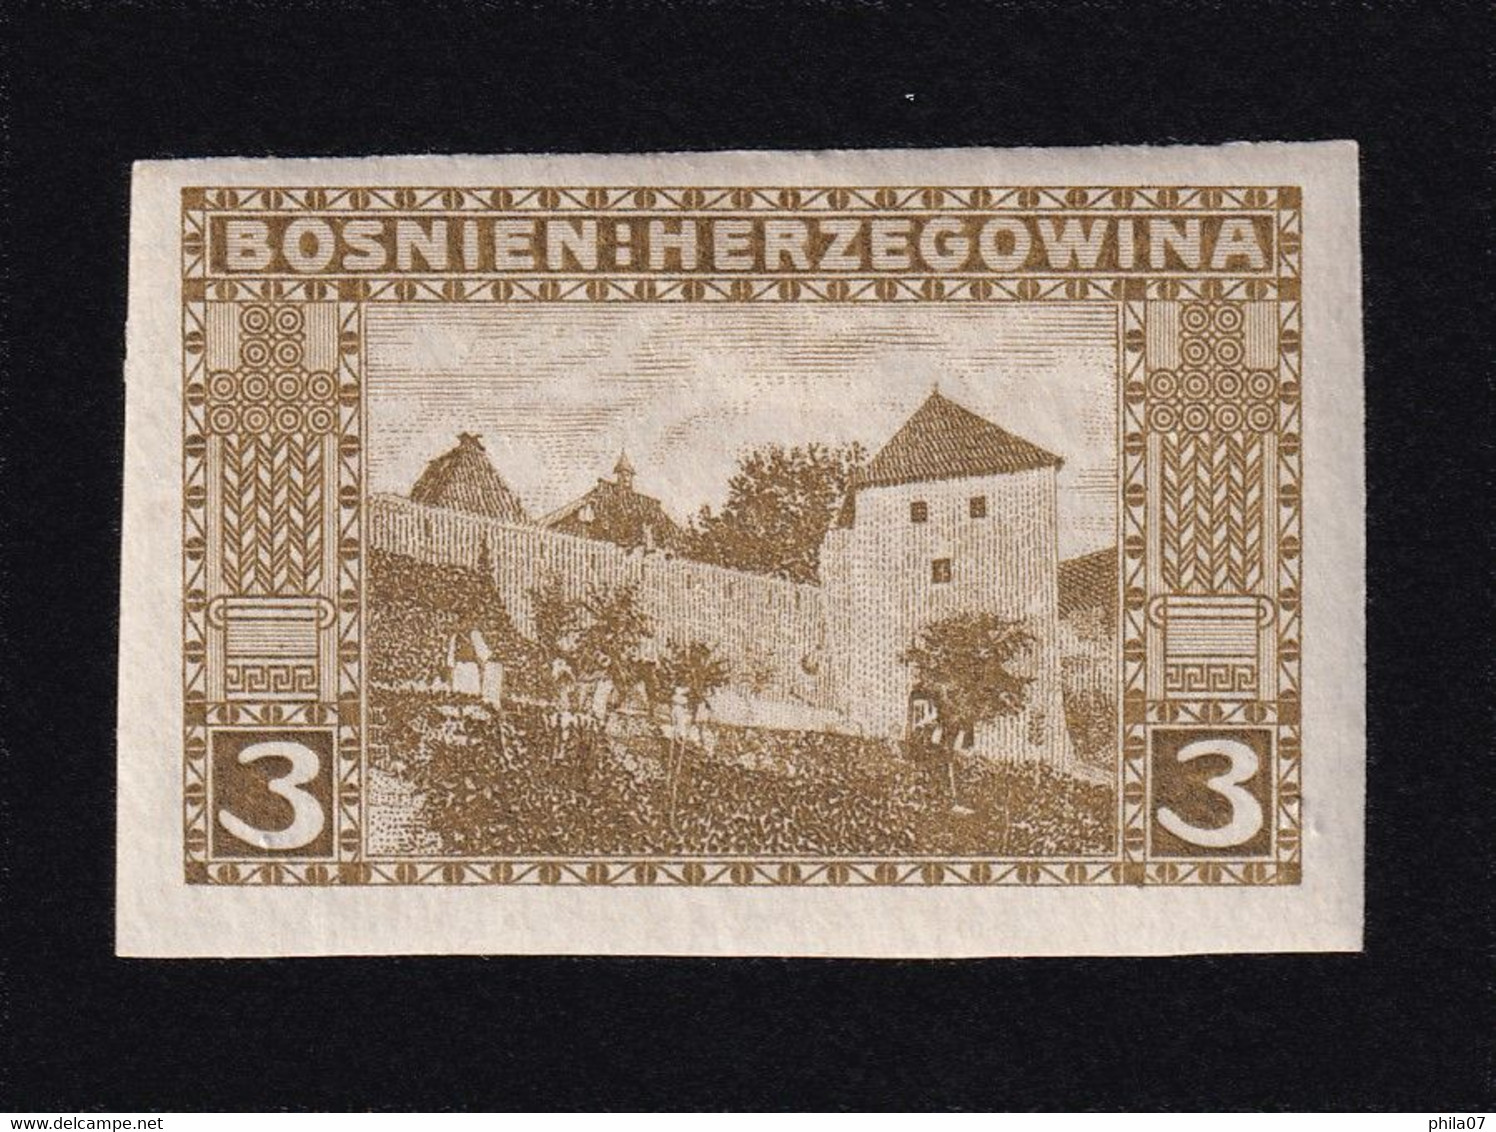 BOSNIA AND HERZEGOVINA - Landscape Stamp 3 Heller, Imperforate Stamp, MH - Bosnie-Herzegovine